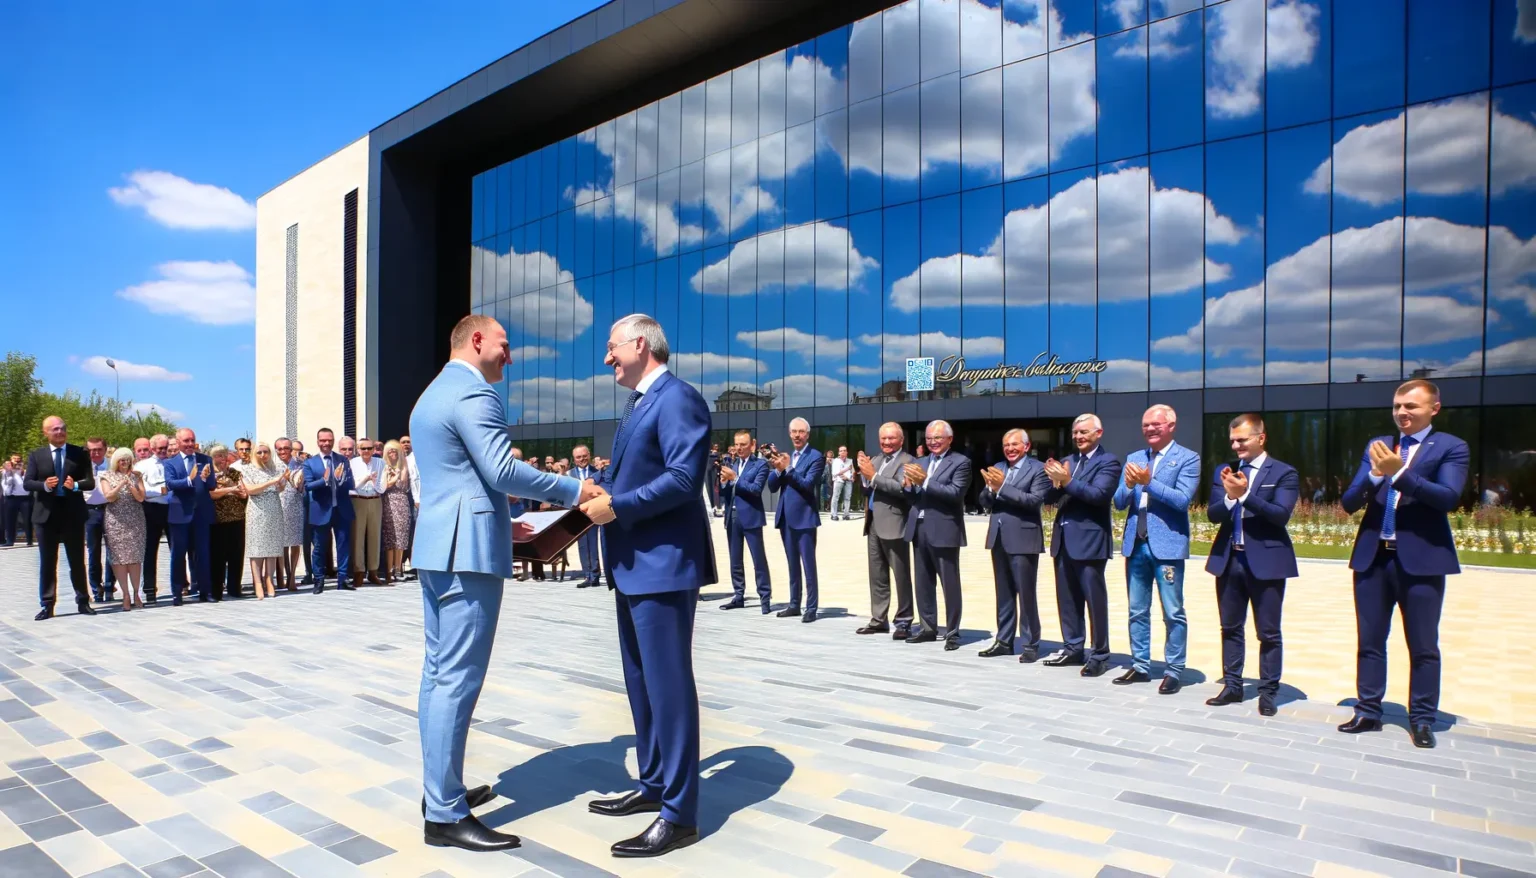 Zwei Männer in Anzügen schütteln sich die Hände in der Mitte einer applaudierenden Gruppe von Menschen vor einem modernen Gebäude mit reflektierender Glasfassade bei sonnigem Wetter.